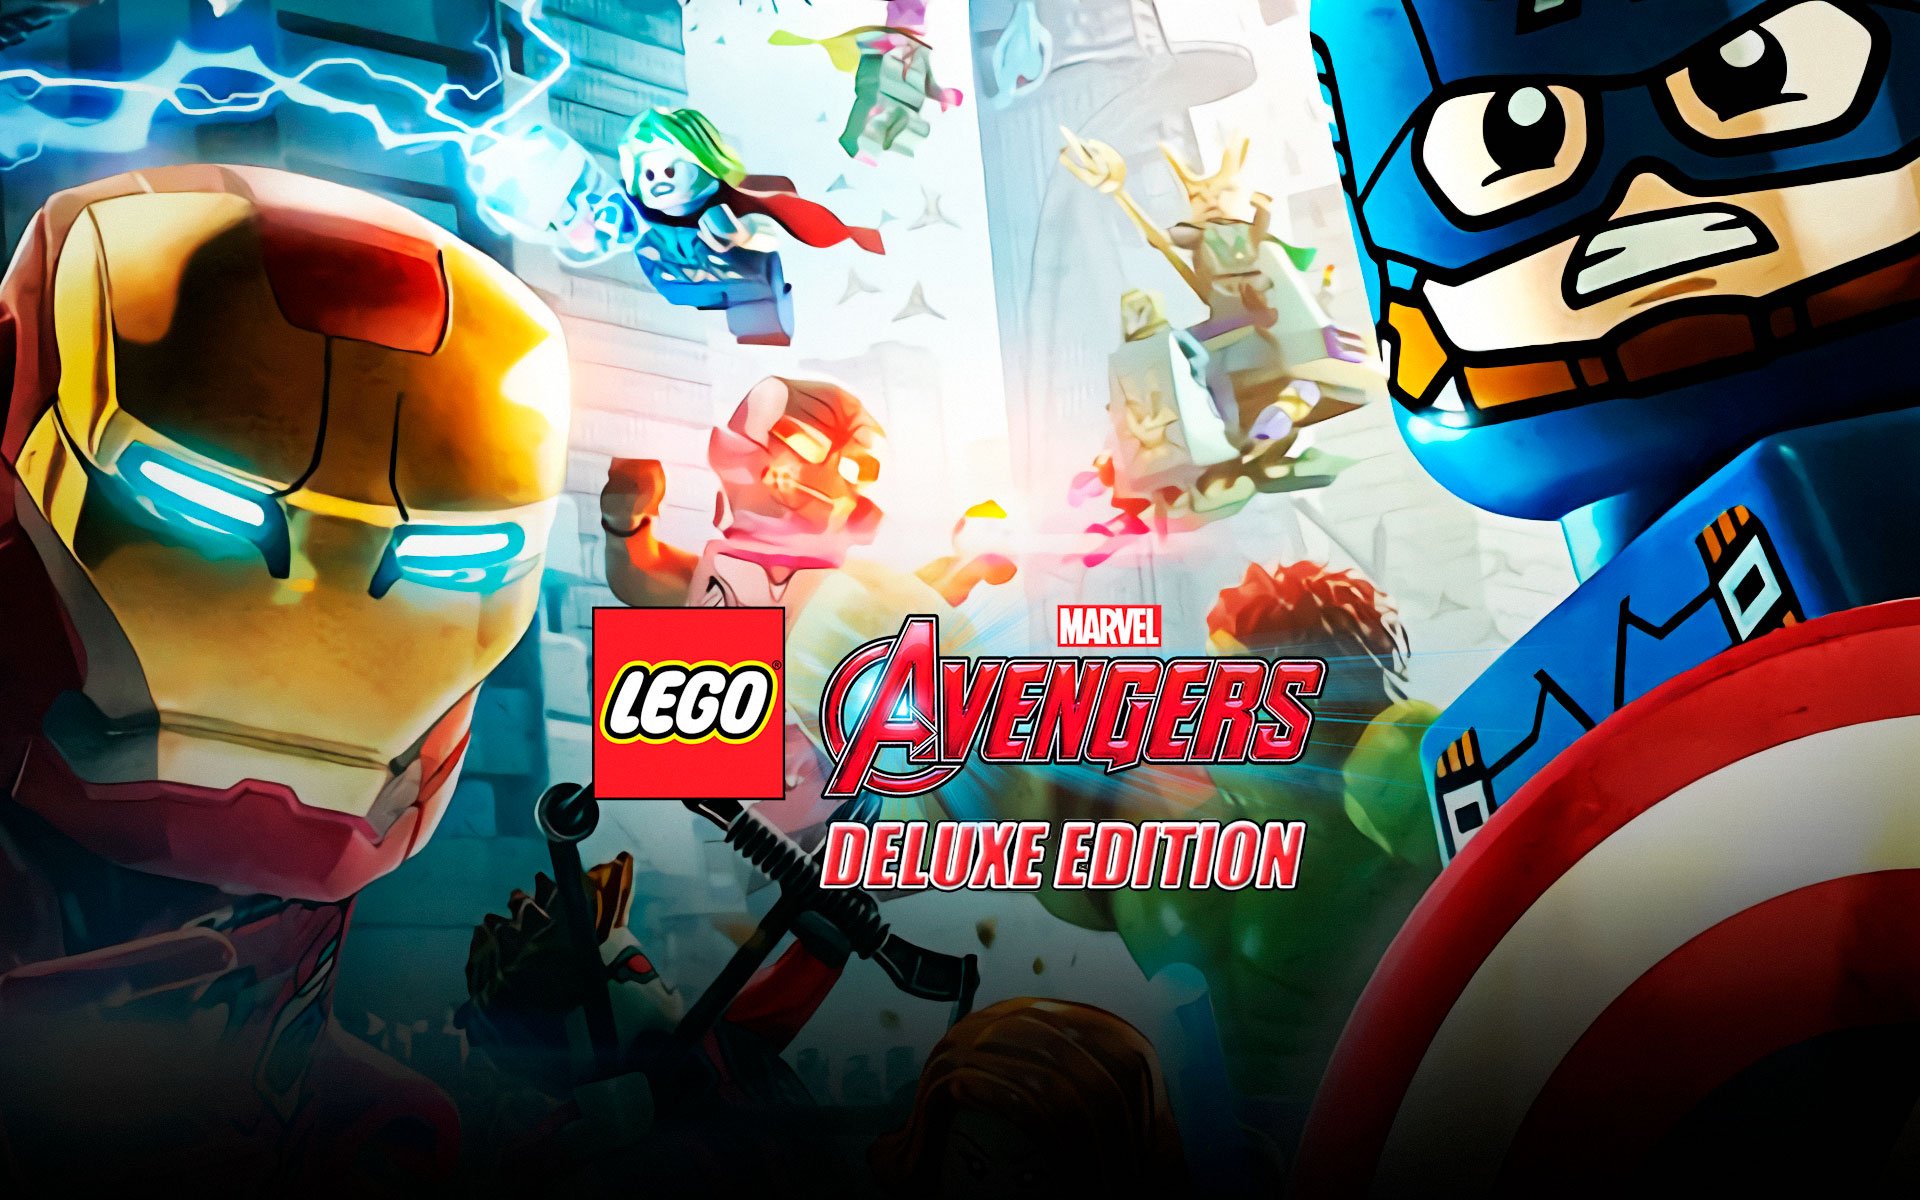 Buy LEGO® Marvel's Avengers Season Pass